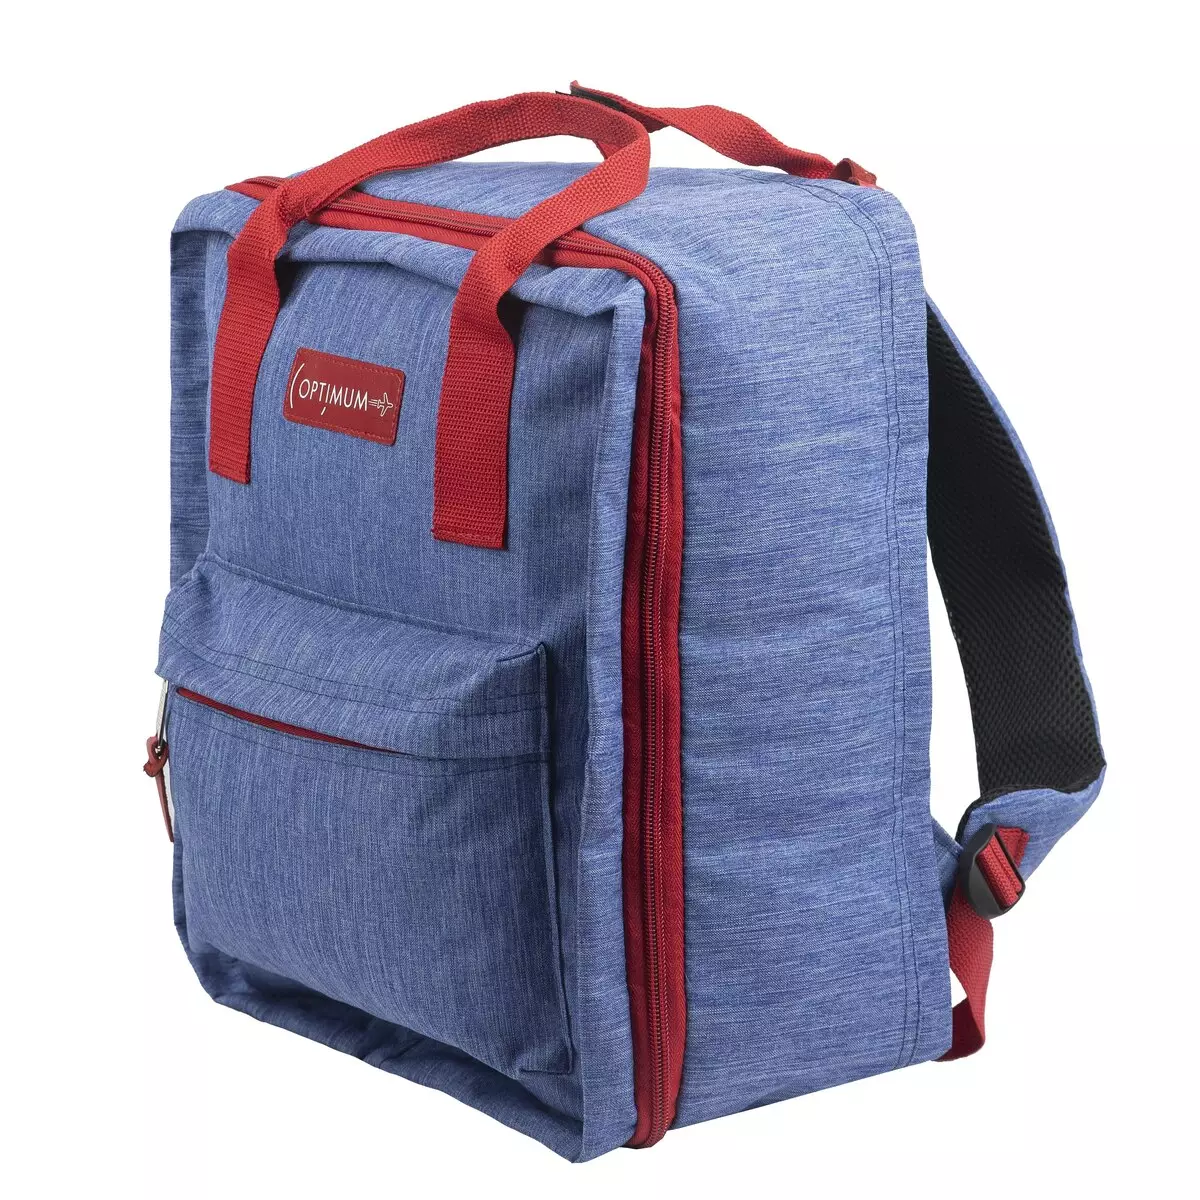 Handsack-Rucksack: Ist es angesehen, einen Rucksack für die Reisende Schleife in der Ebene anzusehen? Maße. Was kann geboren werden, und was soll in das Gepäck gehen? 15346_6